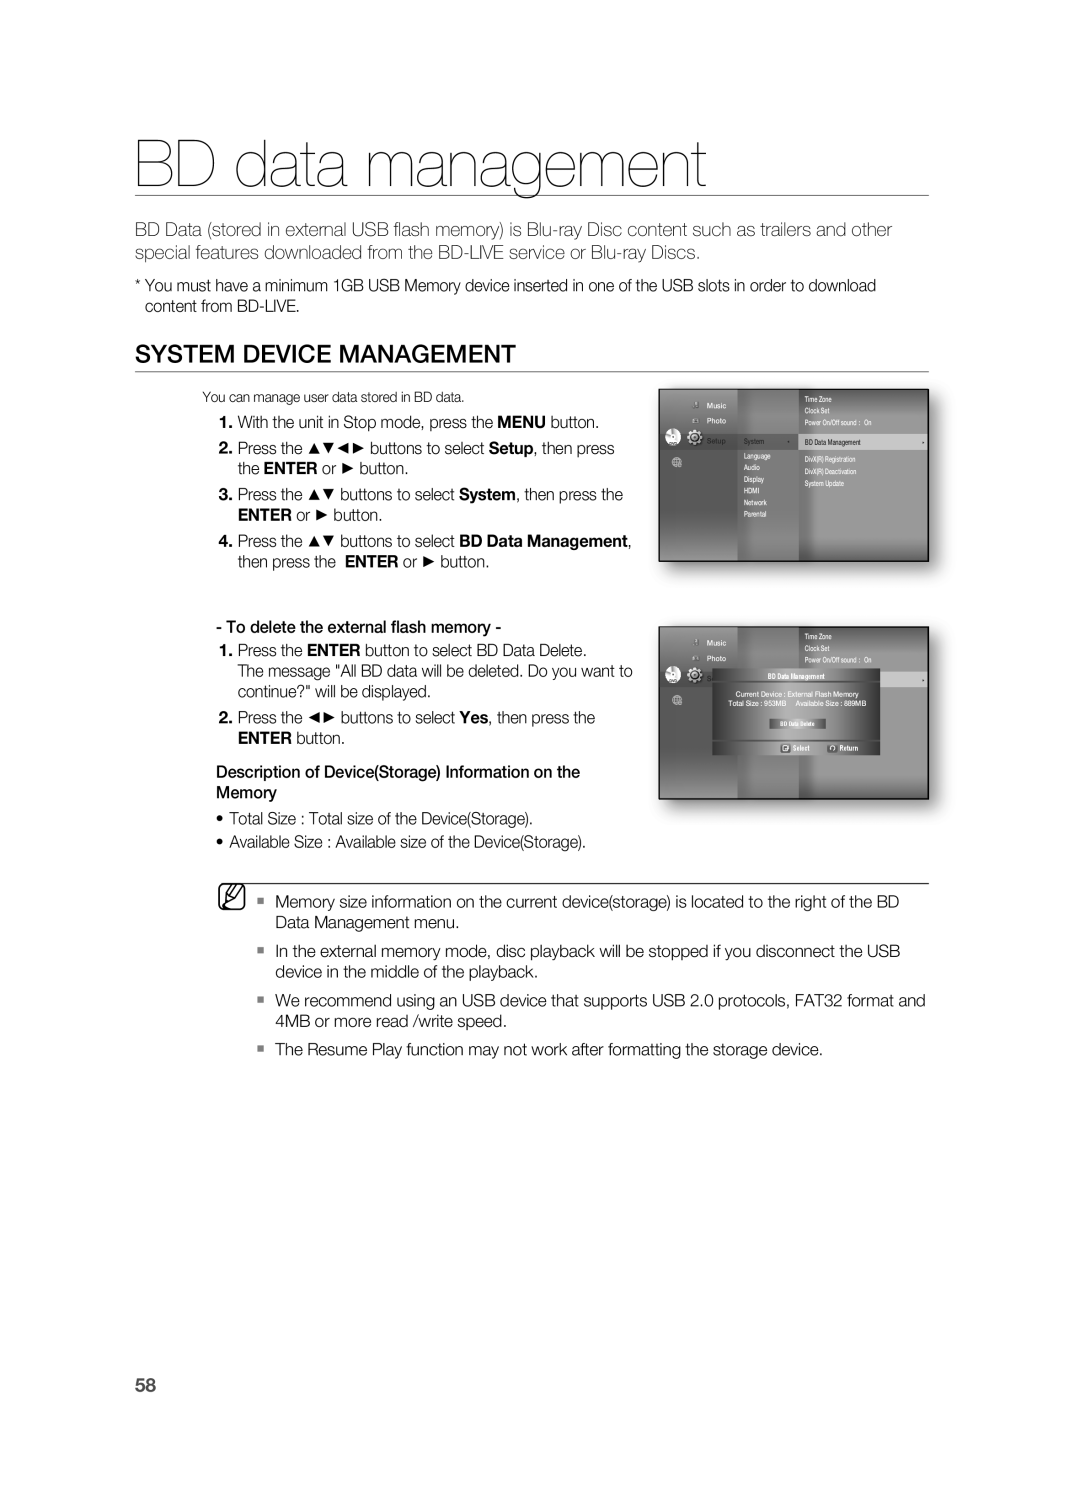 Samsung HT-BD3252 user manual BD data management, System Device Management 